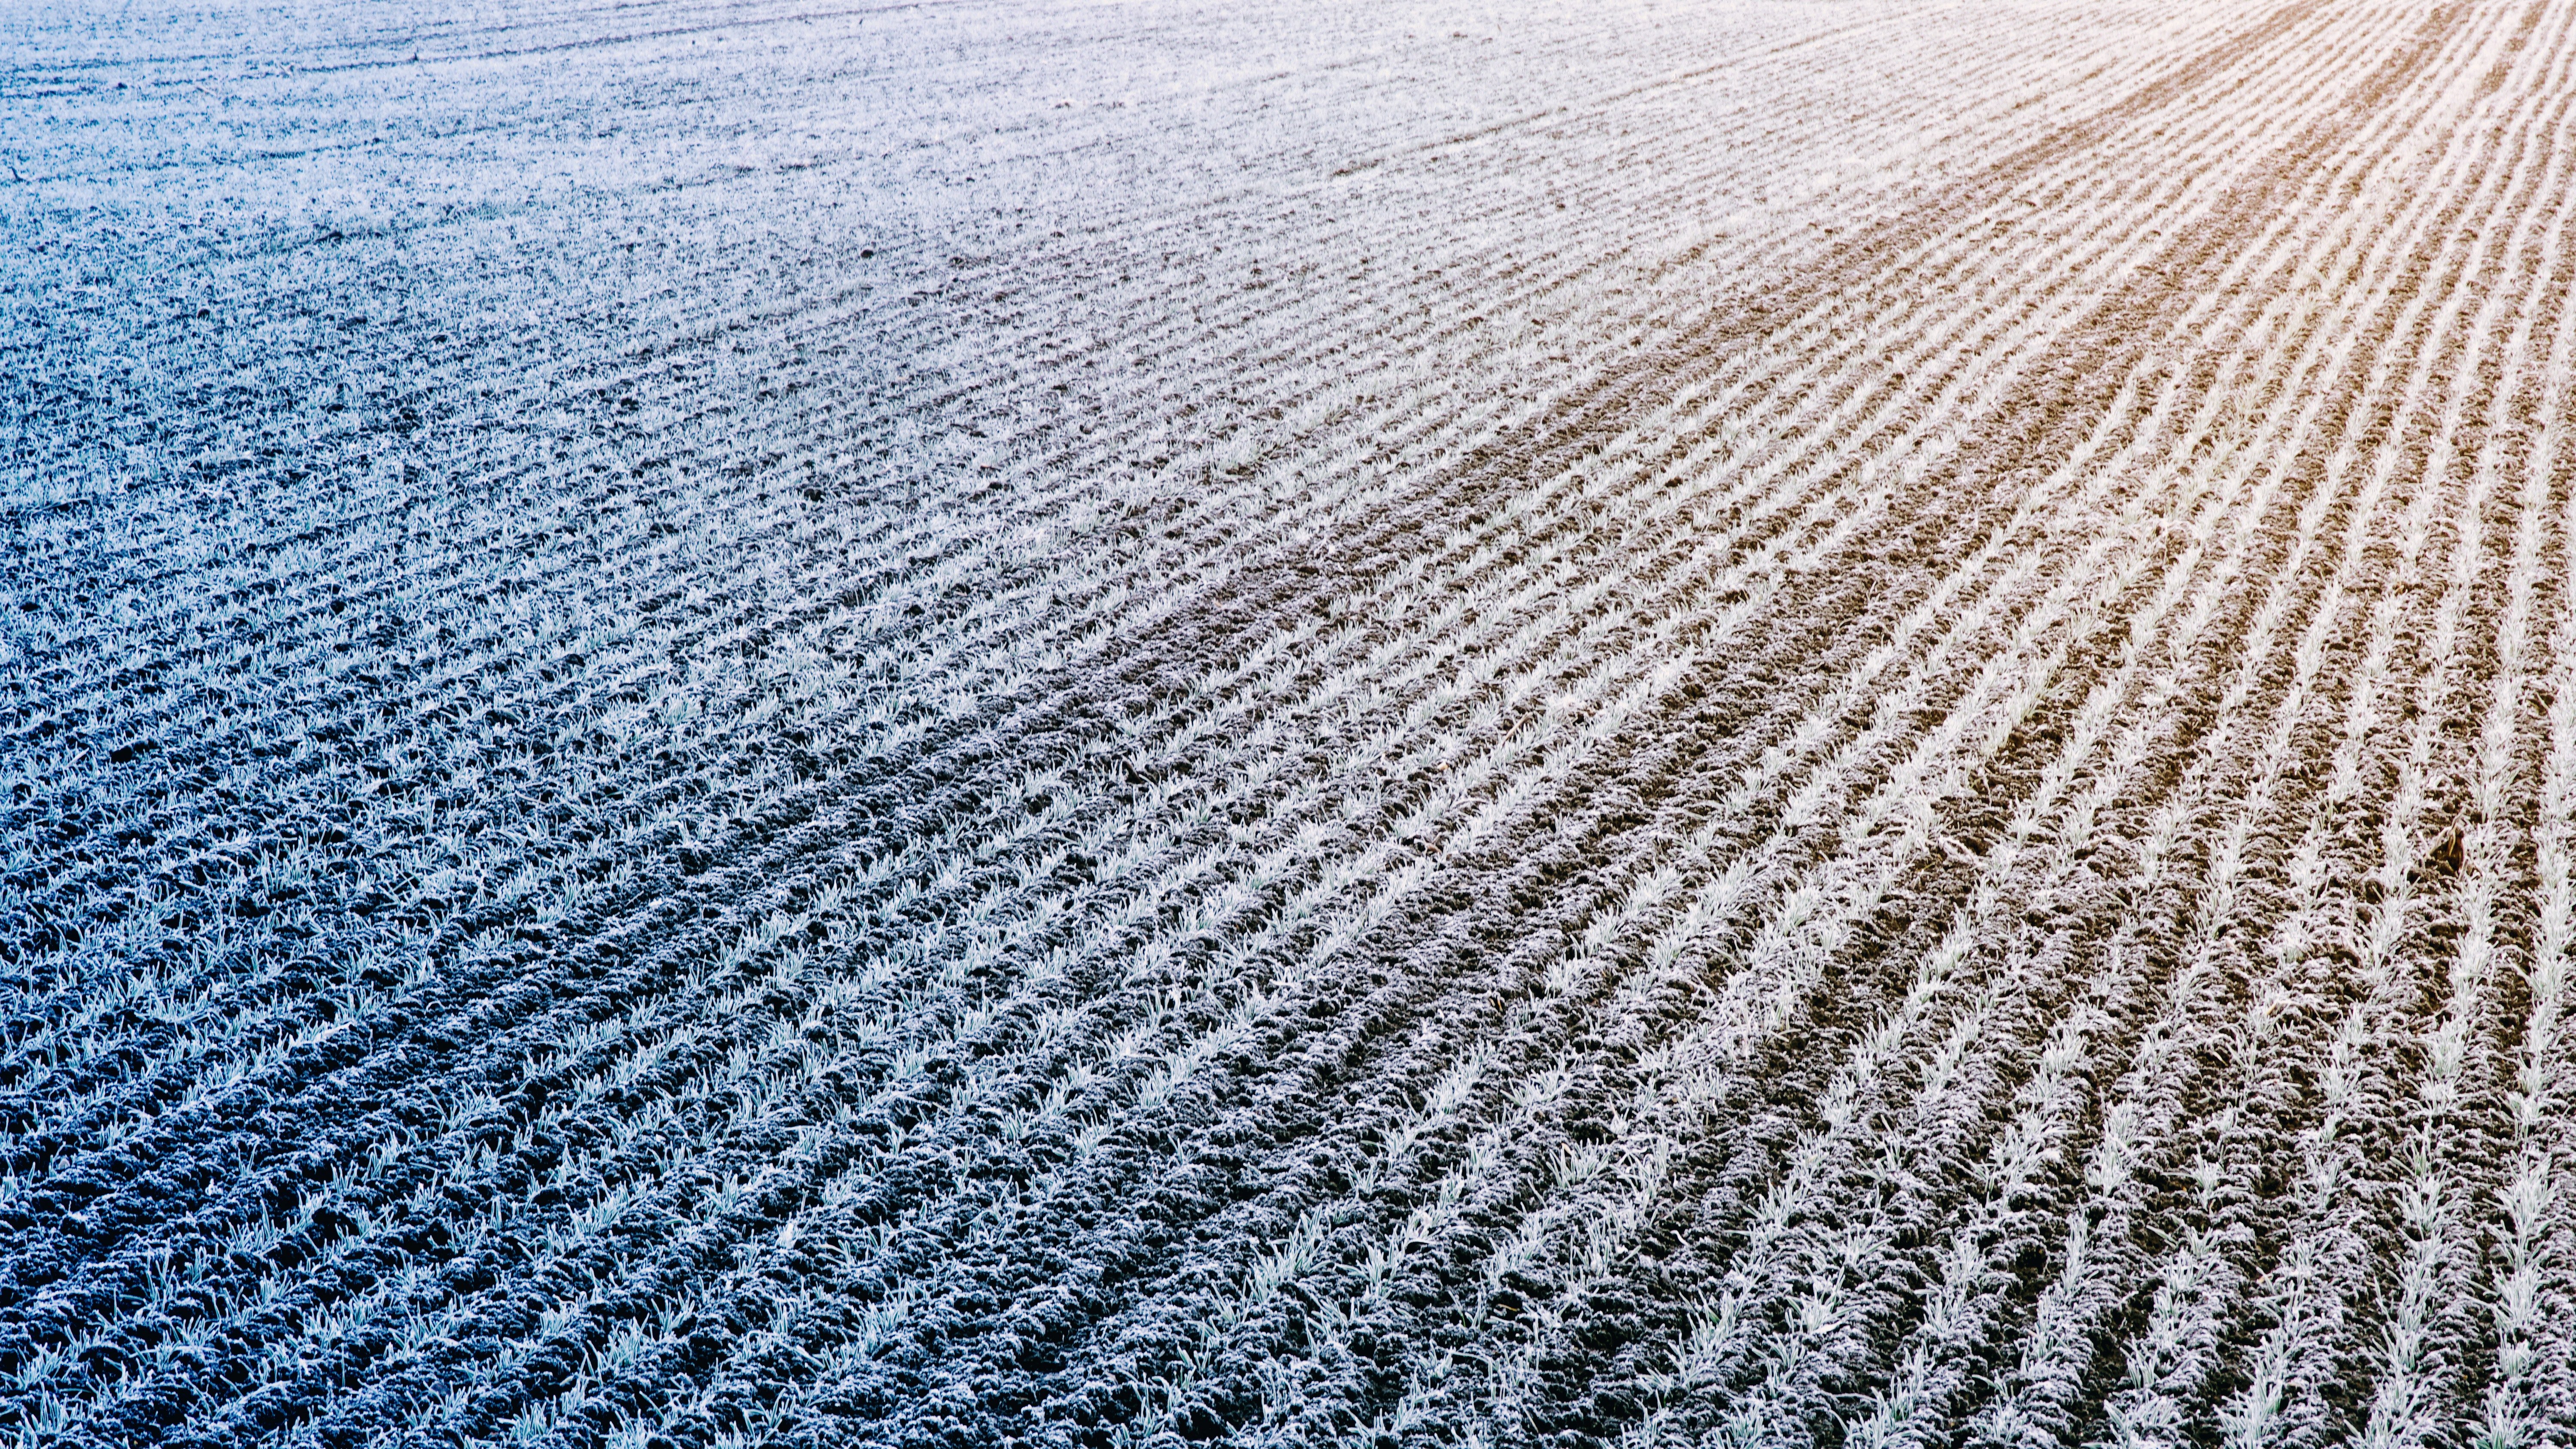 Winter frost on on a farm field